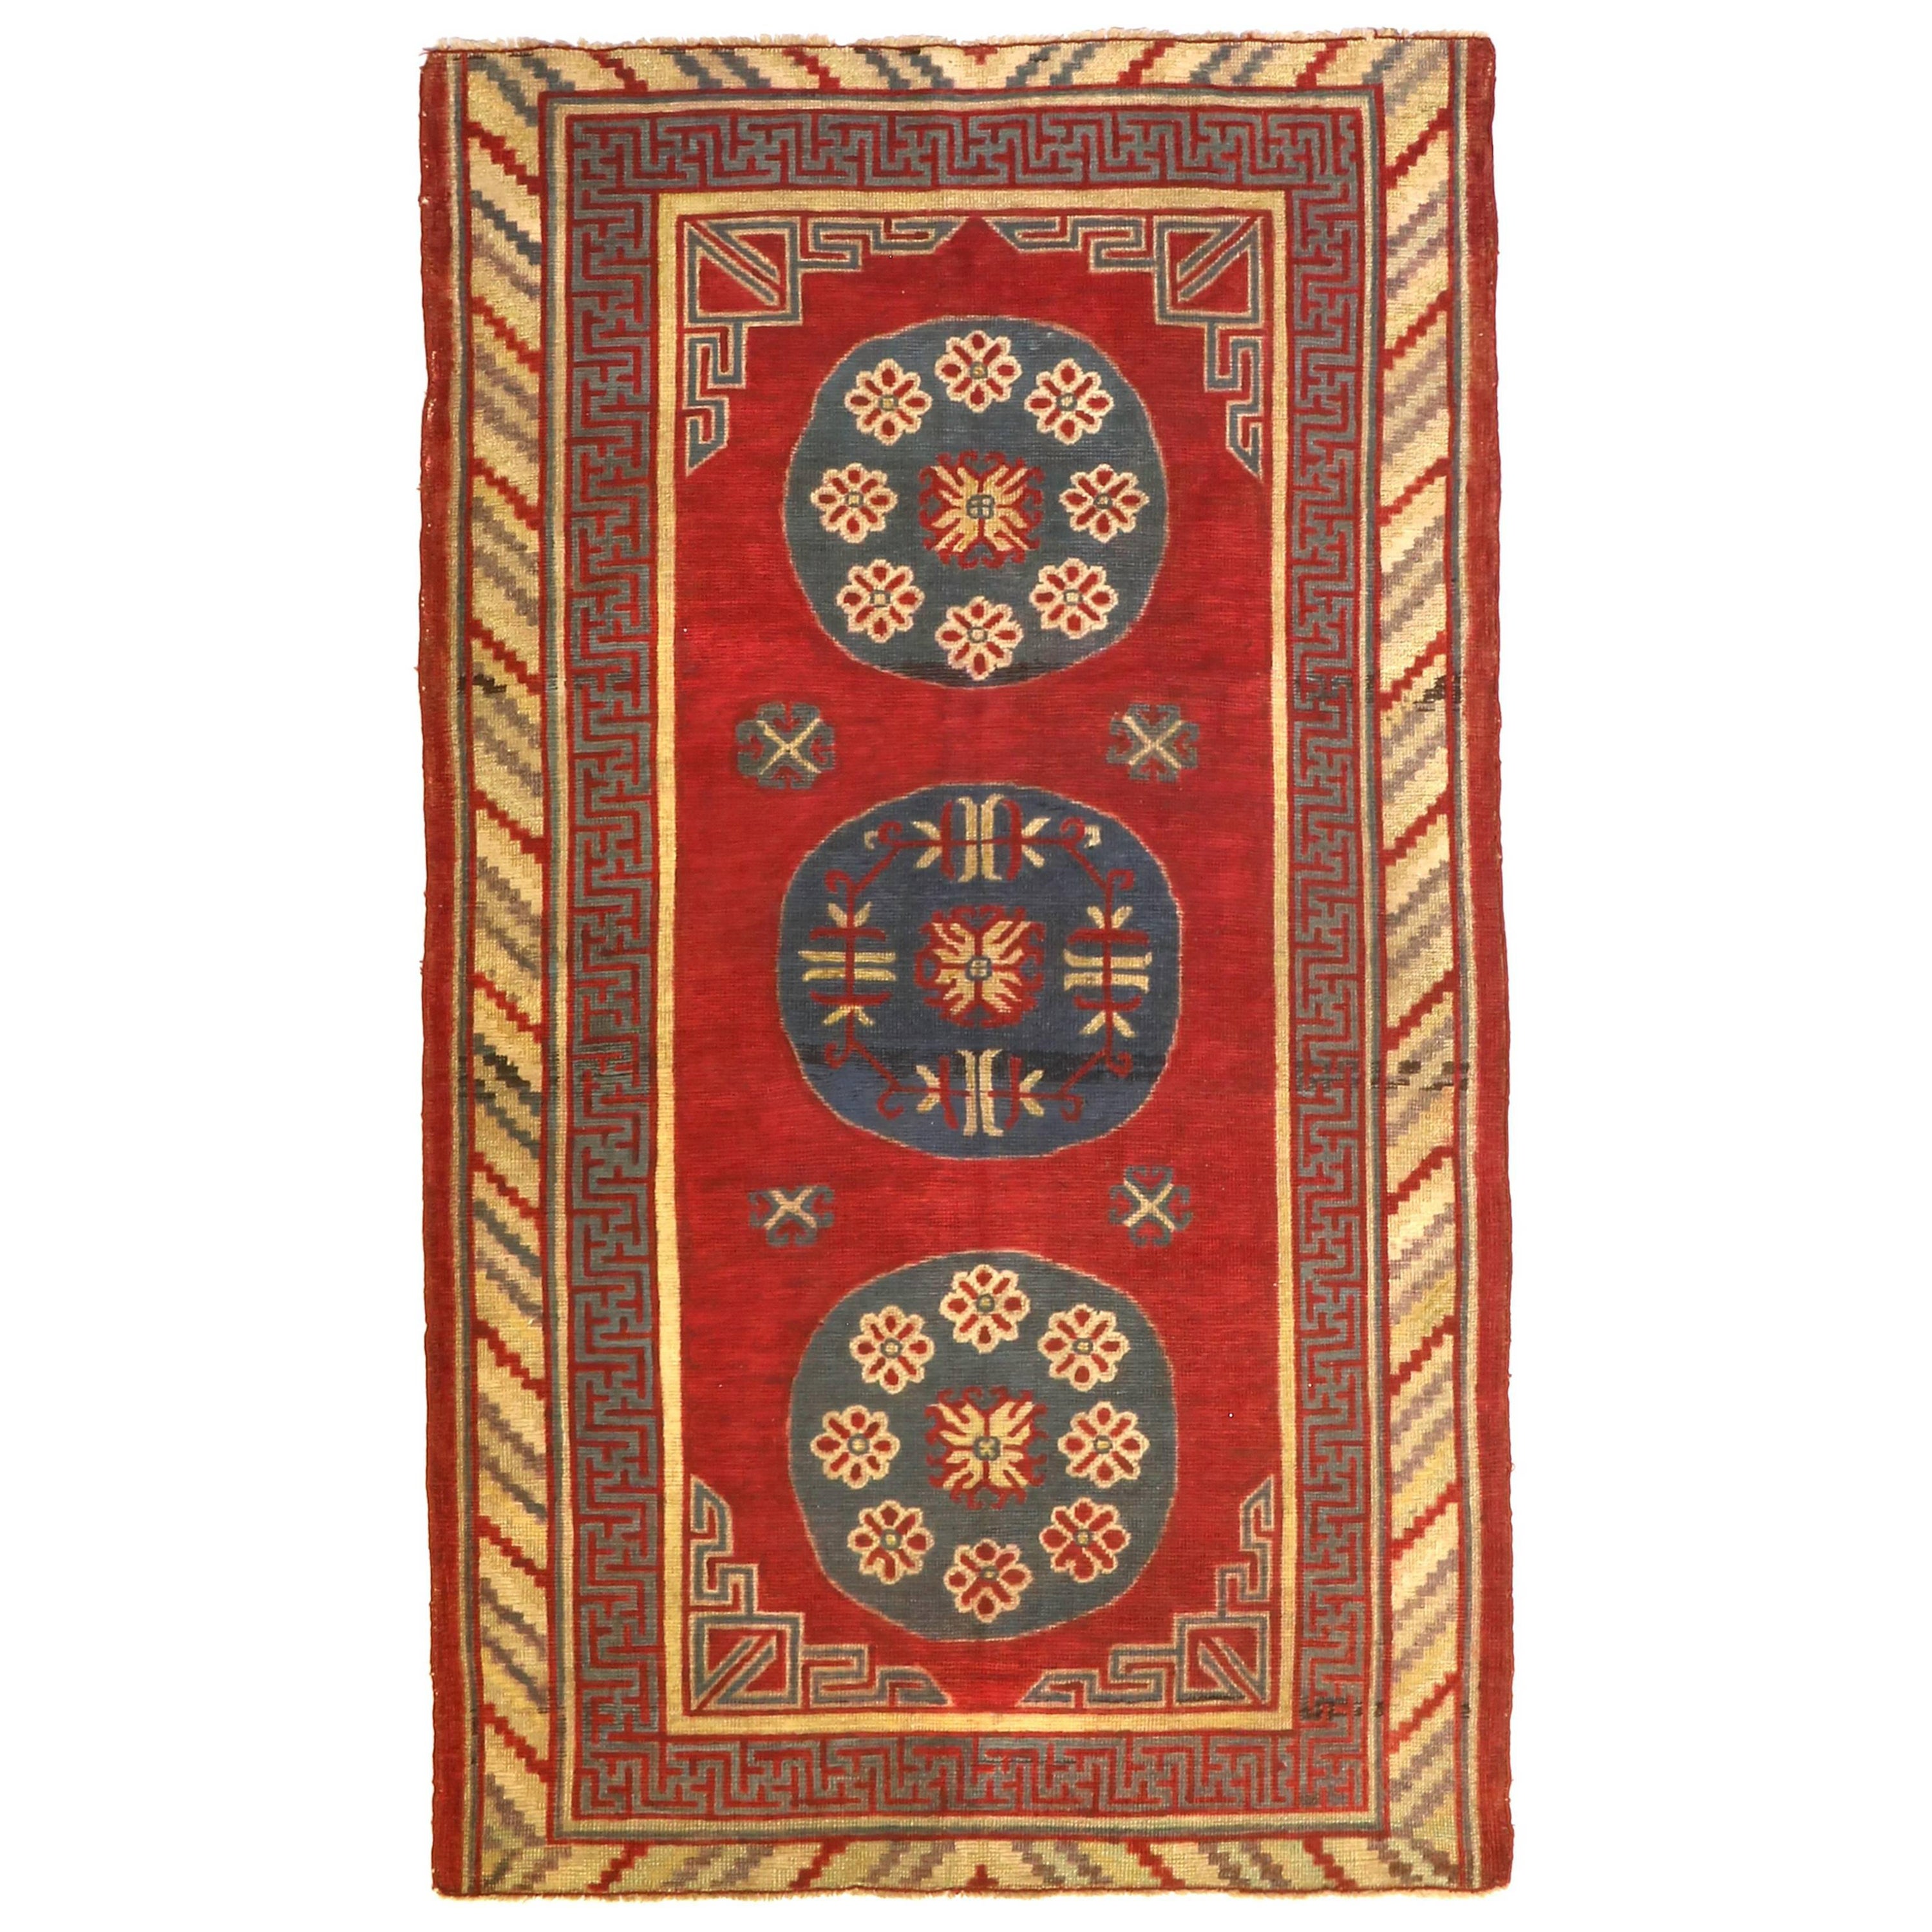 Antique Samarkand Rug, circa 1900s